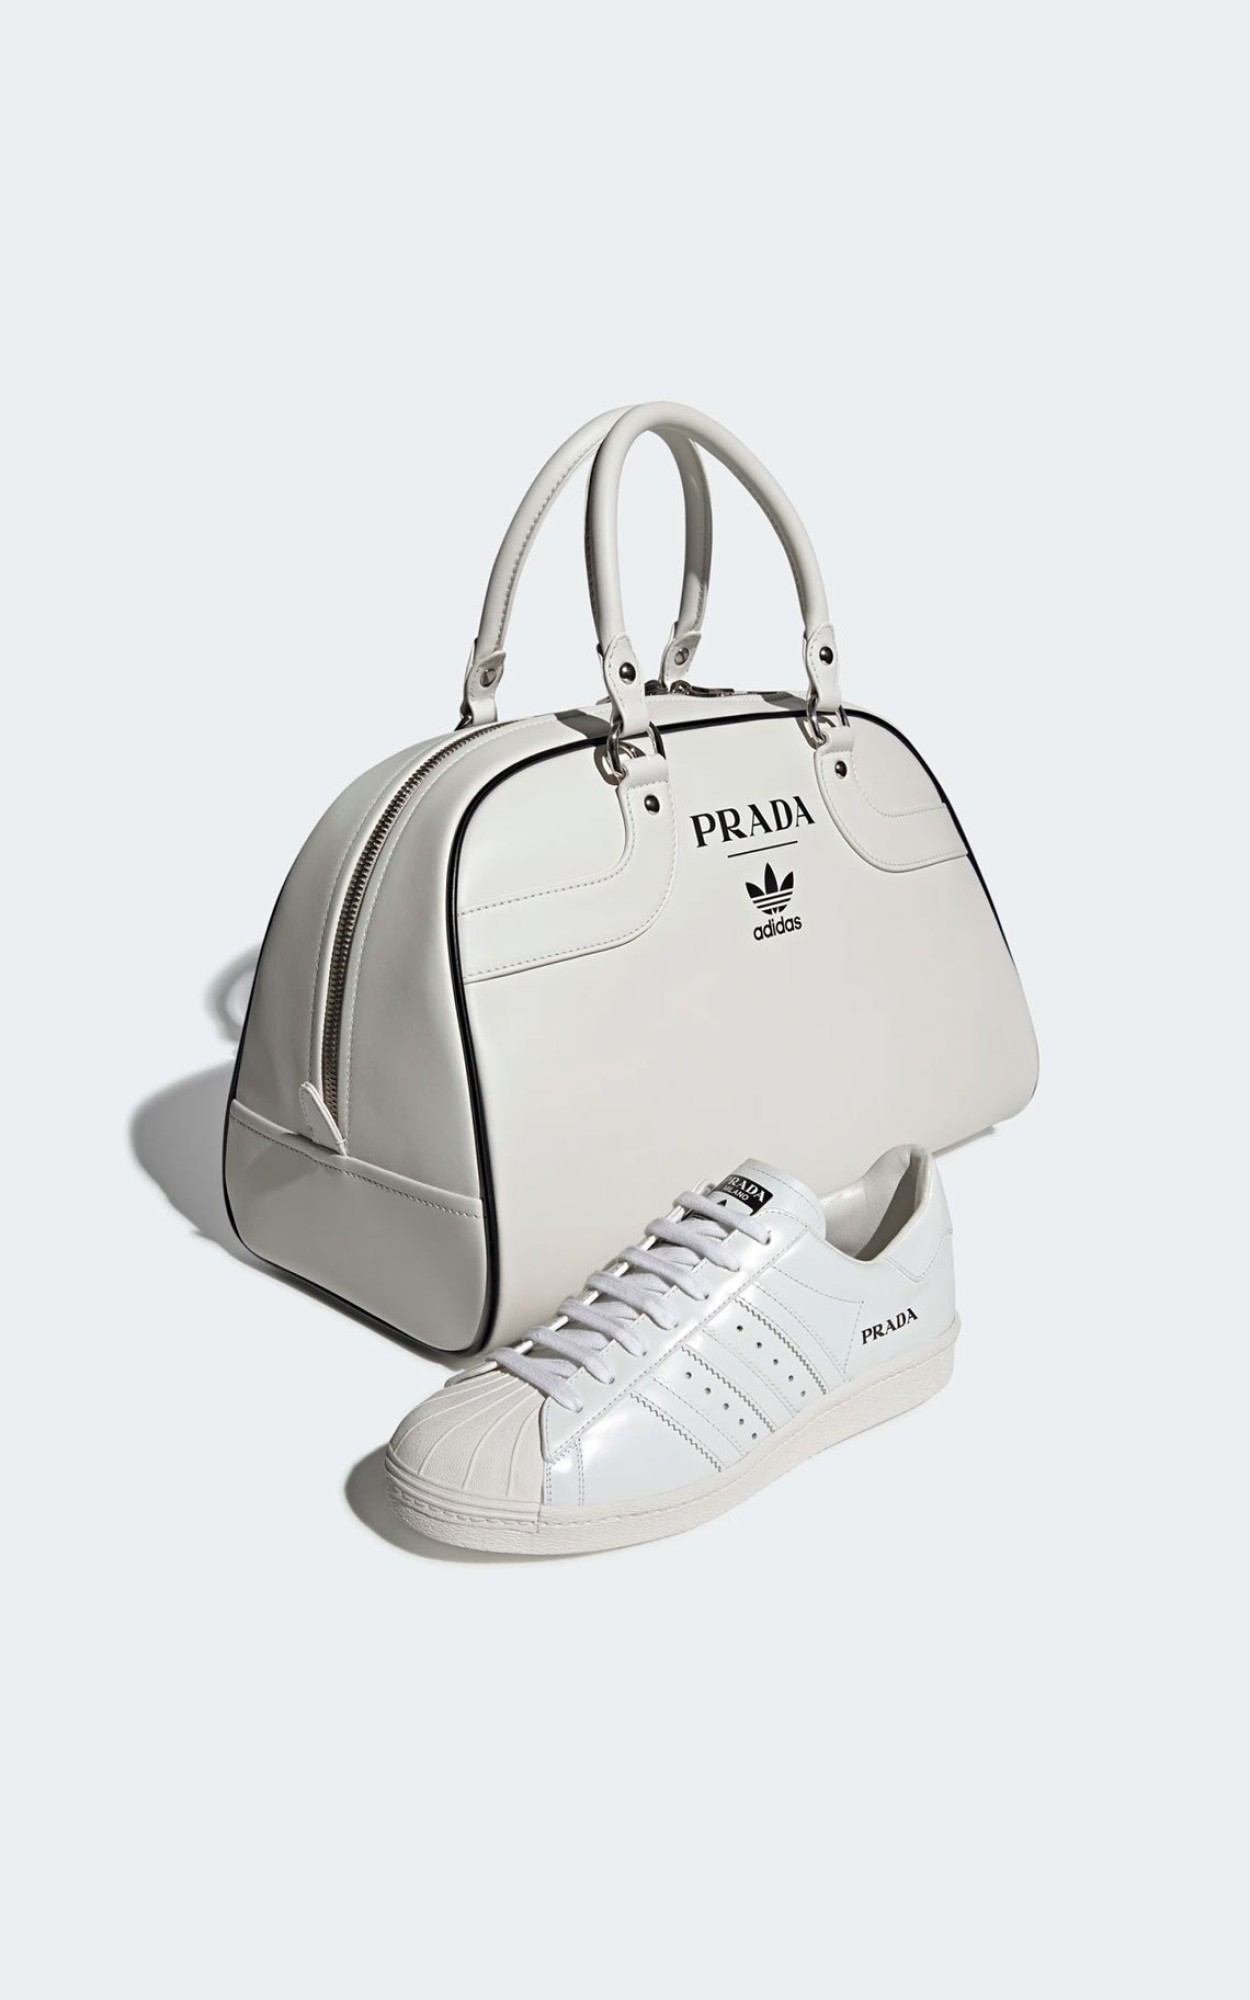 Битва кроссовок: сравниваем коллабы Prada с adidas, Dior с Nike и Givenchy с Onitsuka Tiger